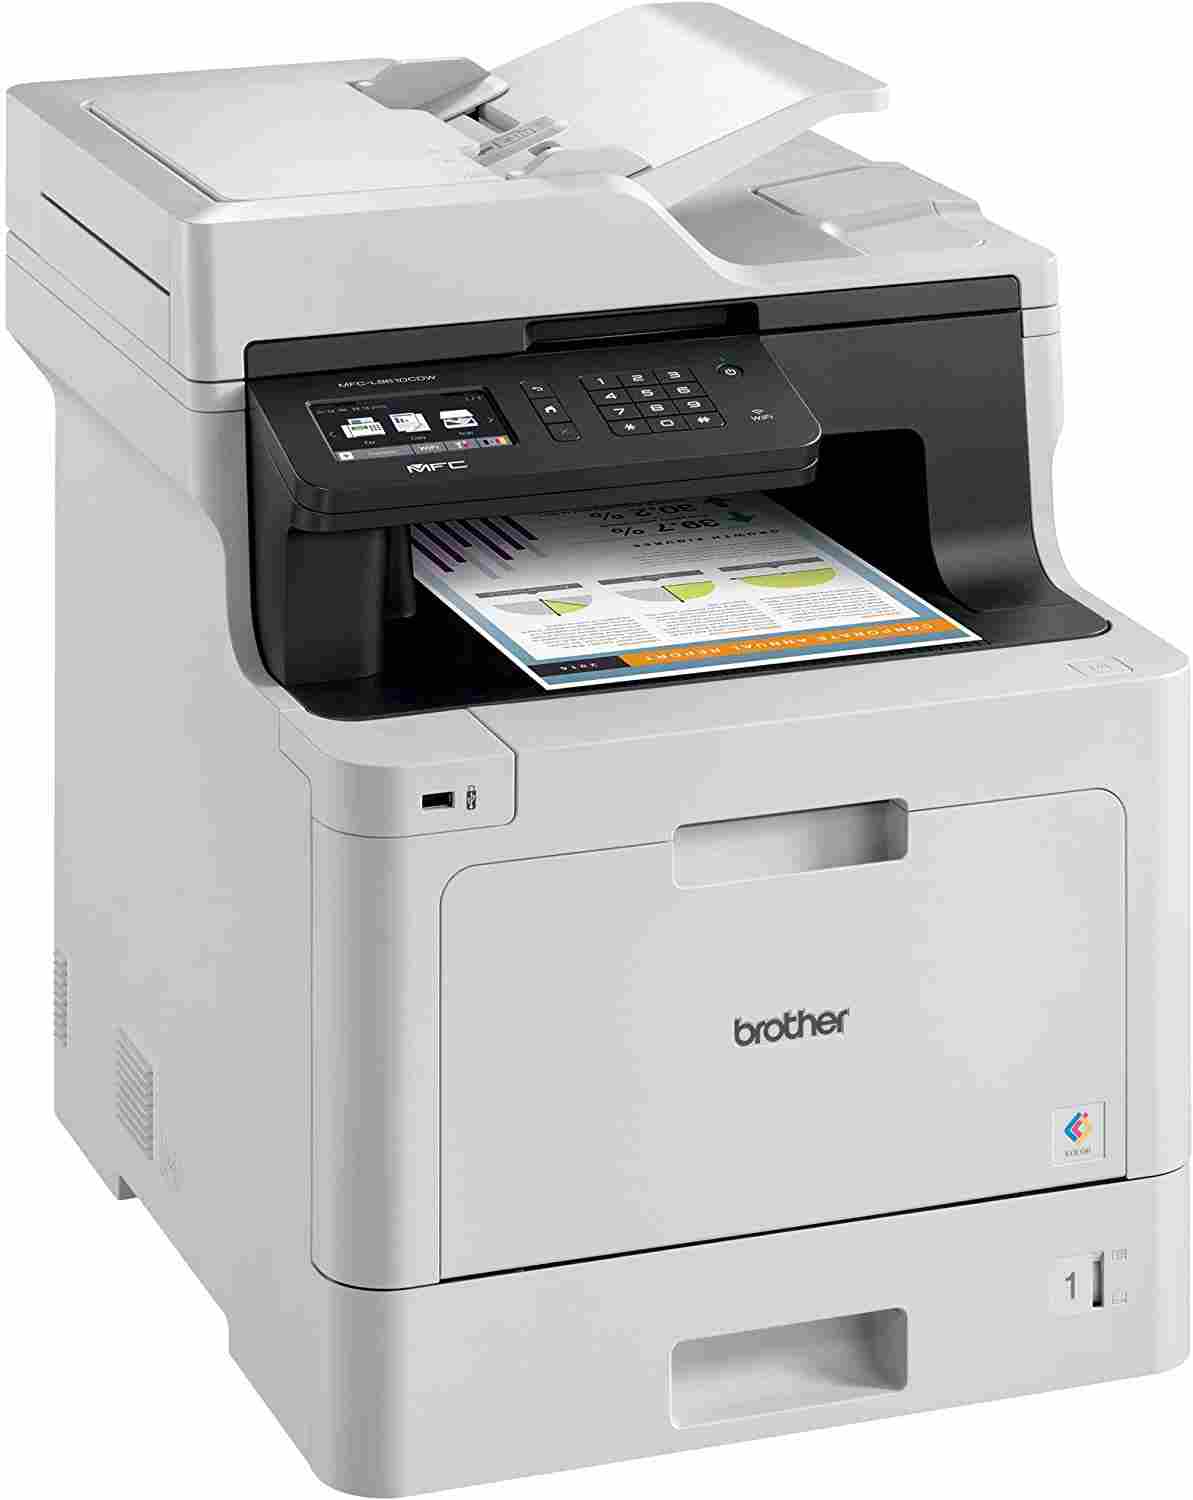 best multifunction color laser printer under 300